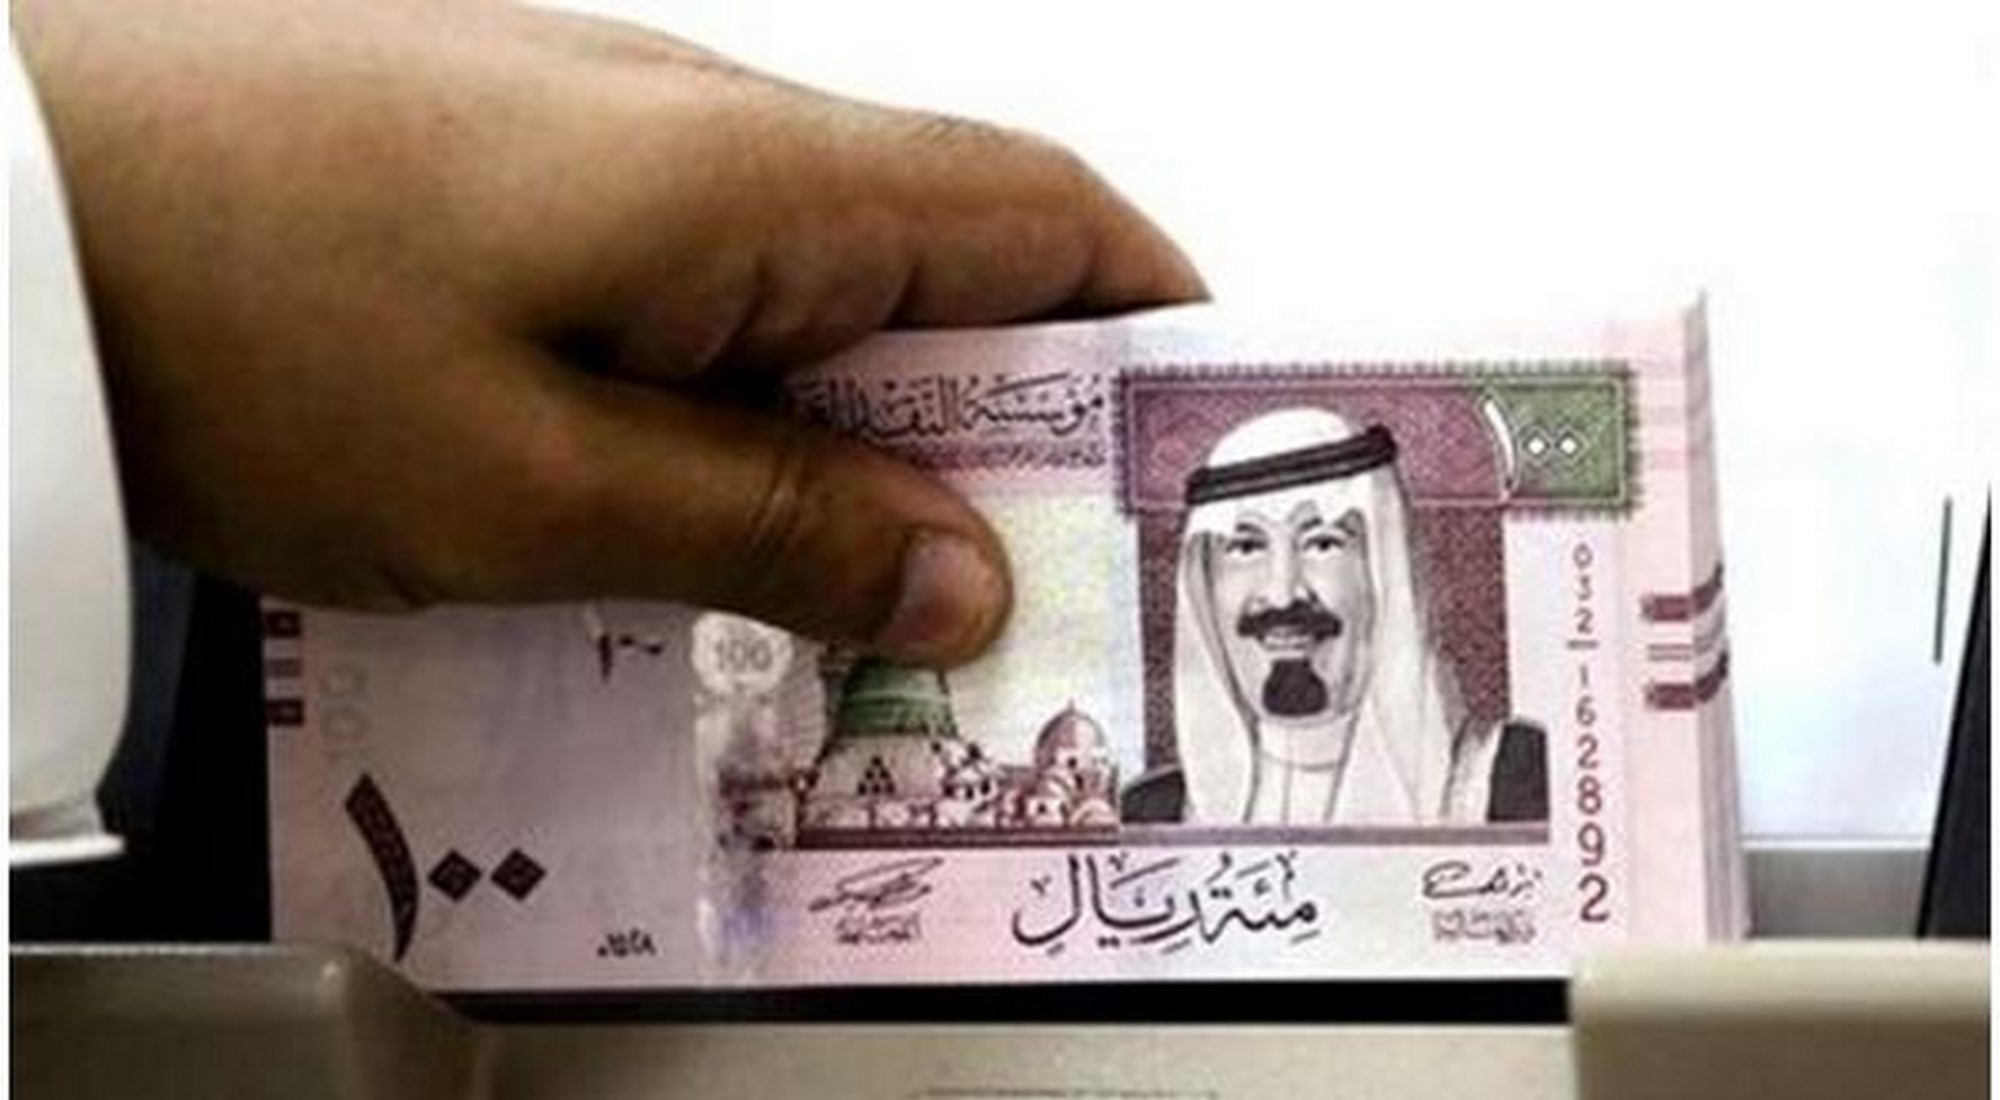 سعر الريال السعودي اليوم الأحد 2/2/2020 في البنوك المصرية مقابل الجنيه المصري